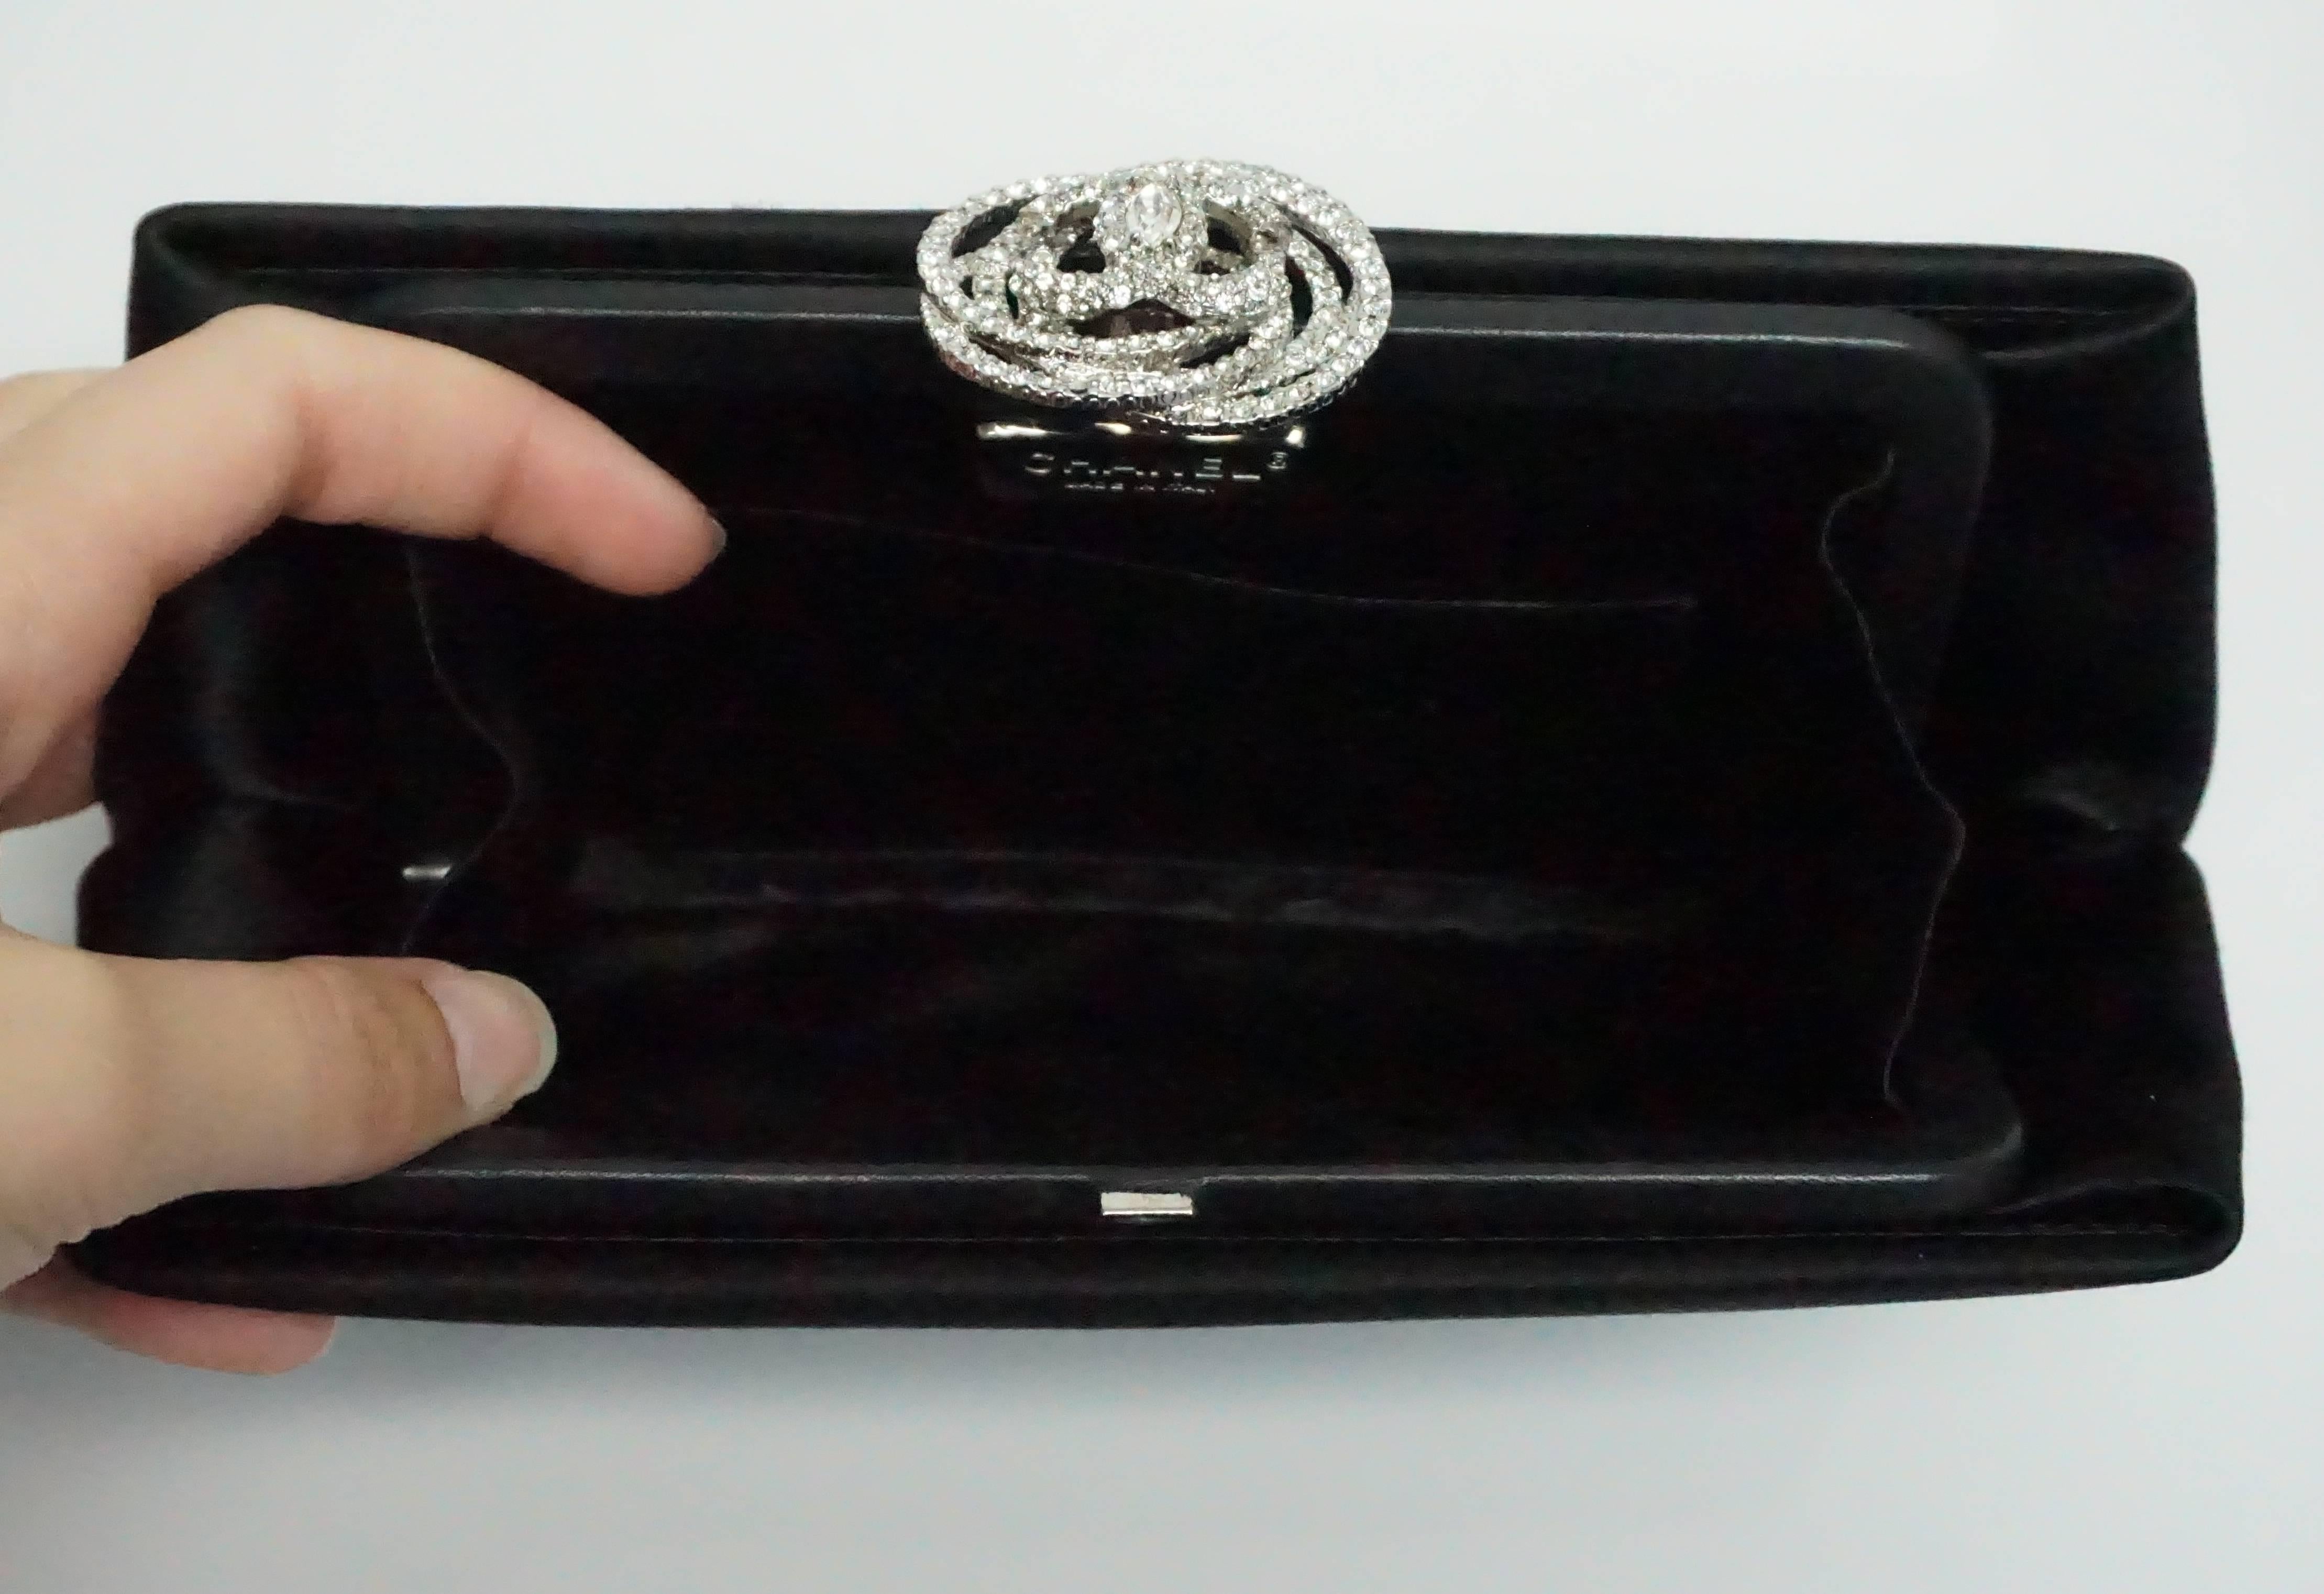 Chanel Black Satin Clutch with Rhinestone Camelia Clasp, 2011 1